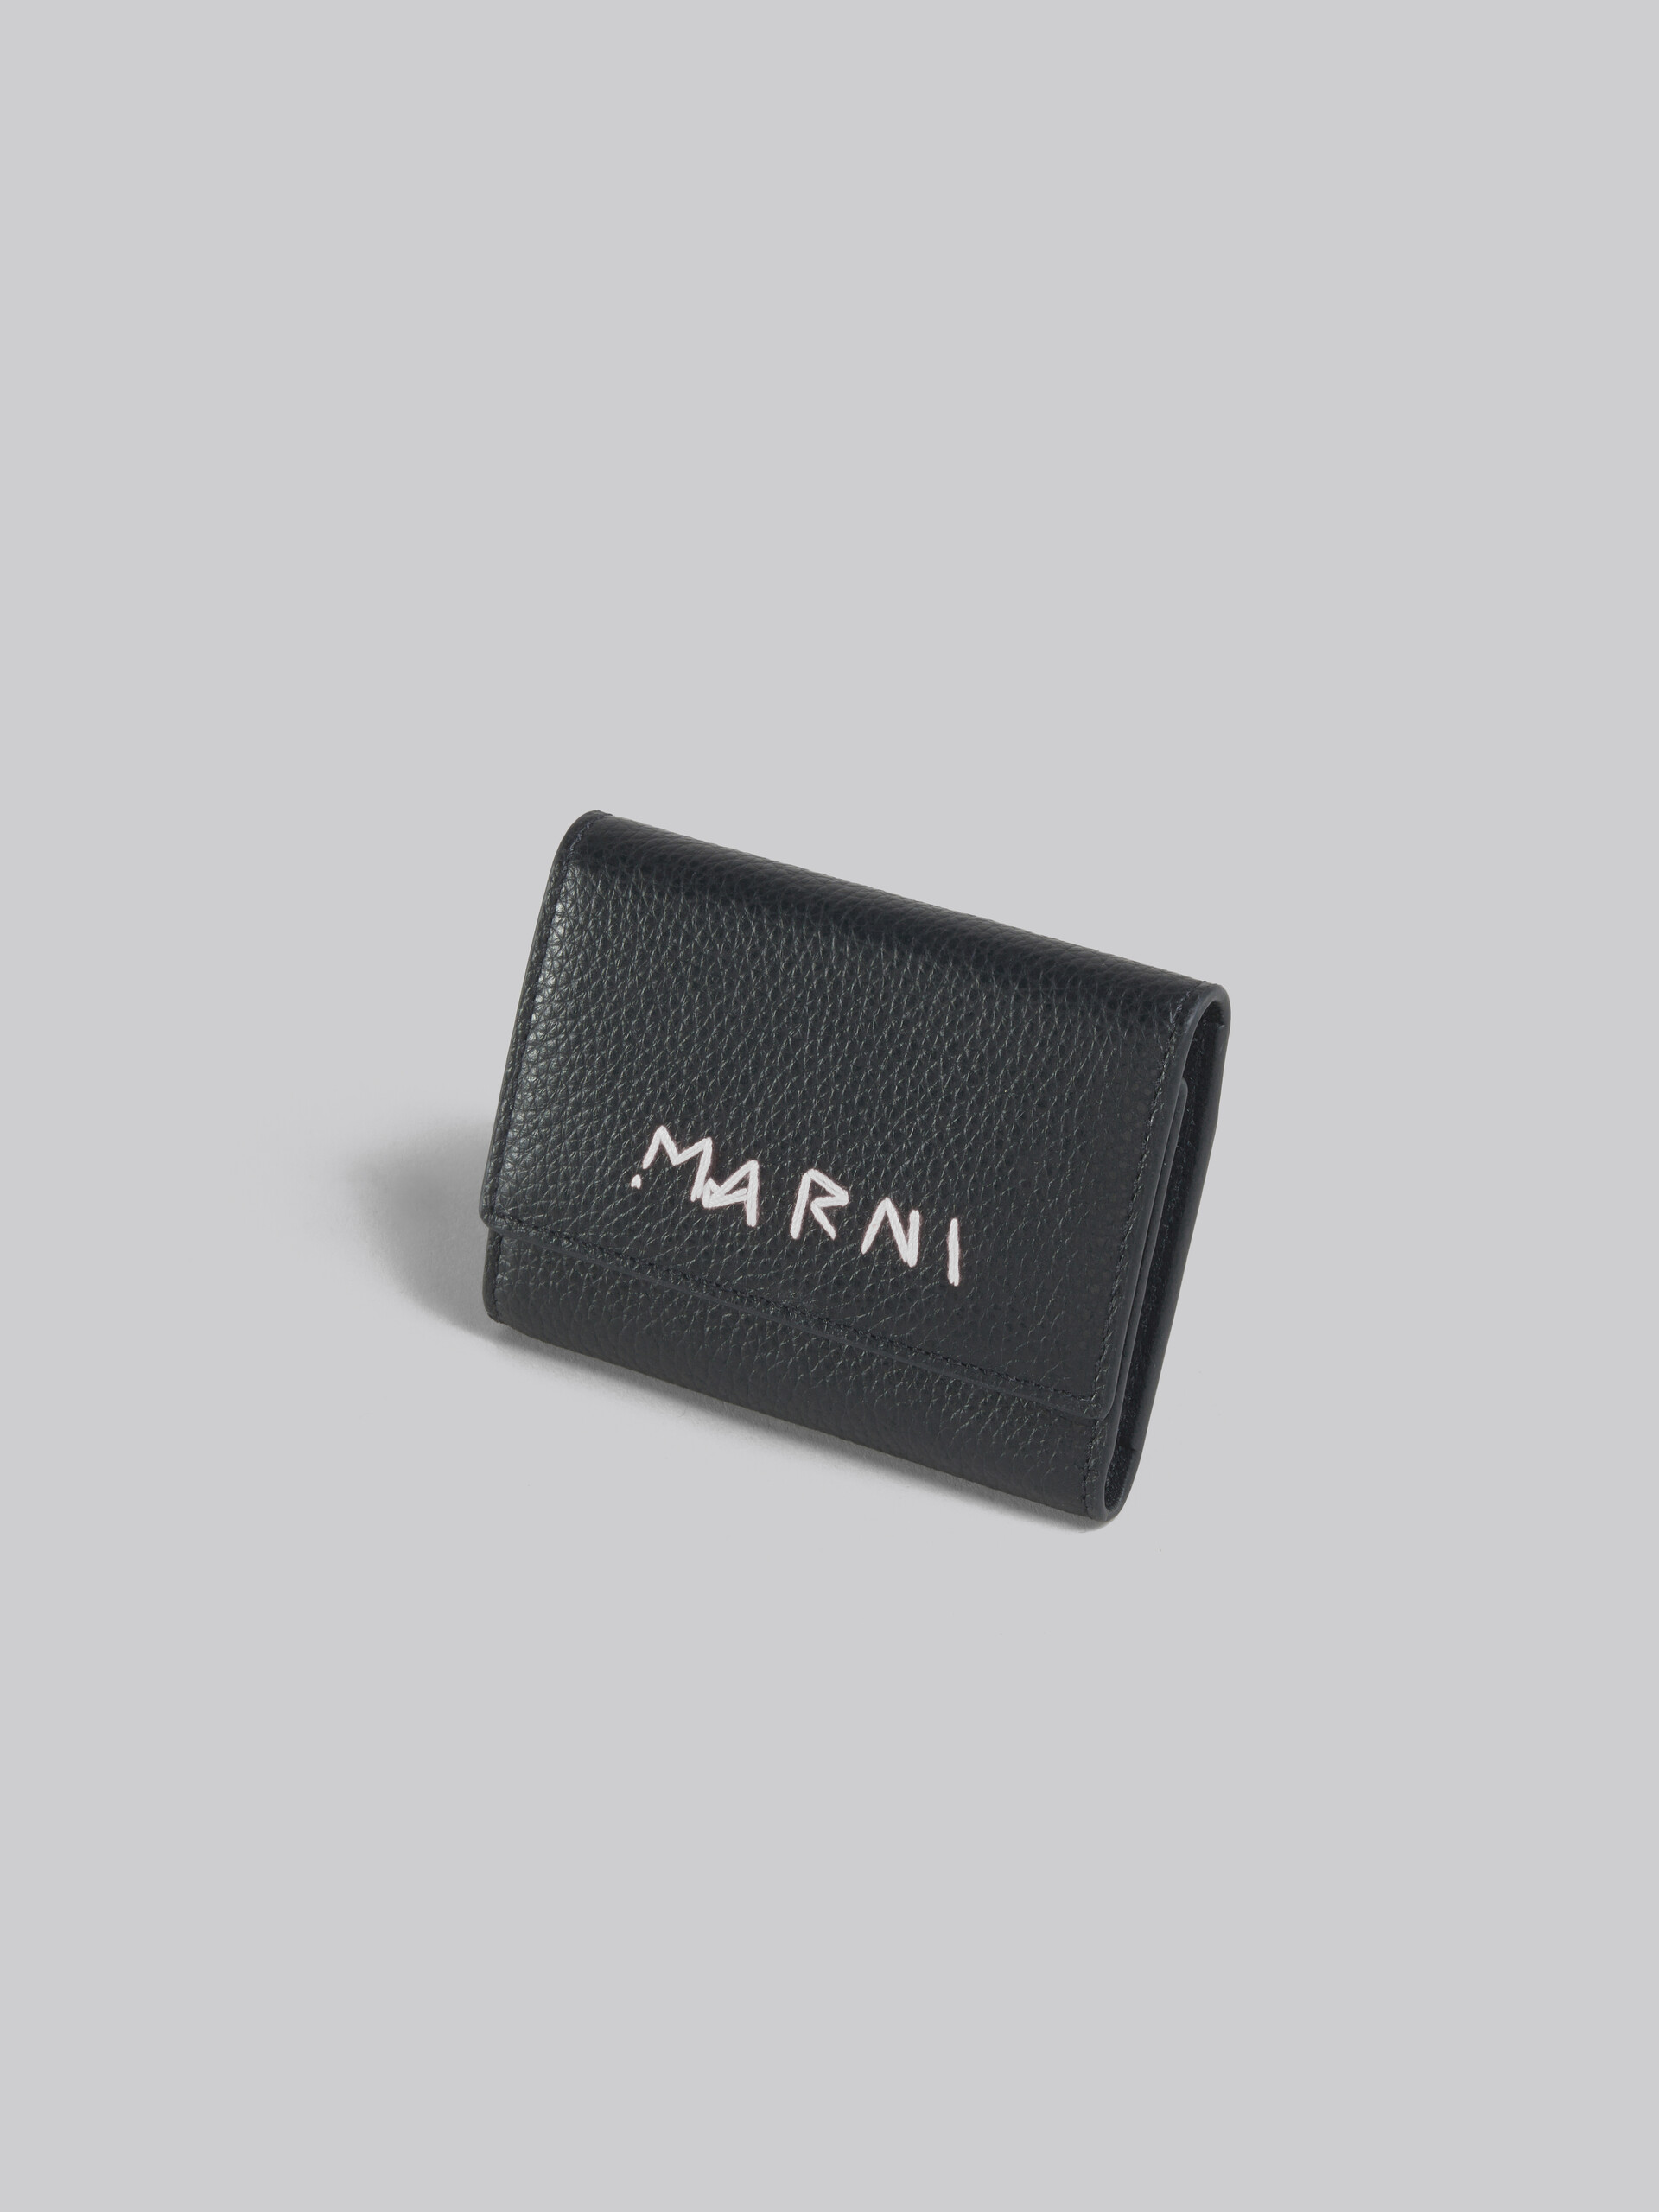 Schlüsselanhänger aus Leder mit Marni-Flicken in Schwarz - Schlüsseletui - Image 3